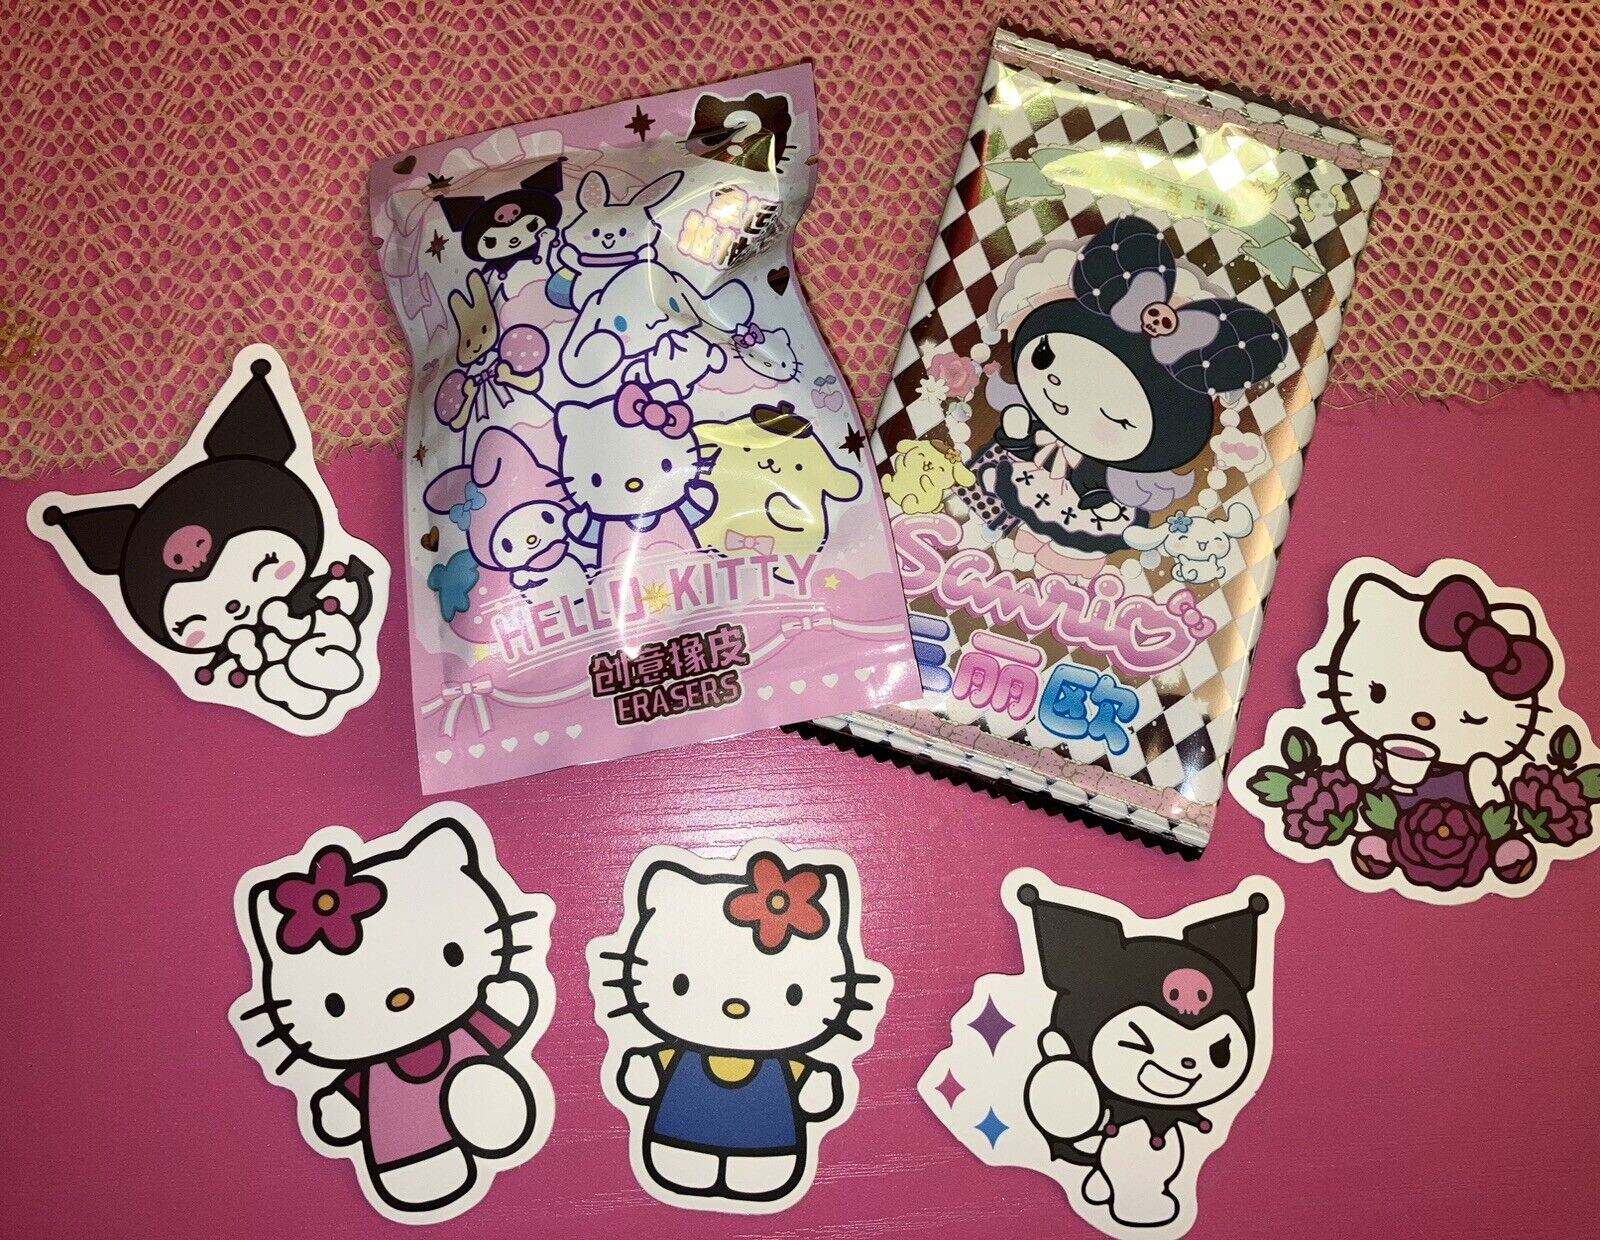 Tiny Cute little Hellokitty&friends fun pack (Stickers,cards,eraser)+bill